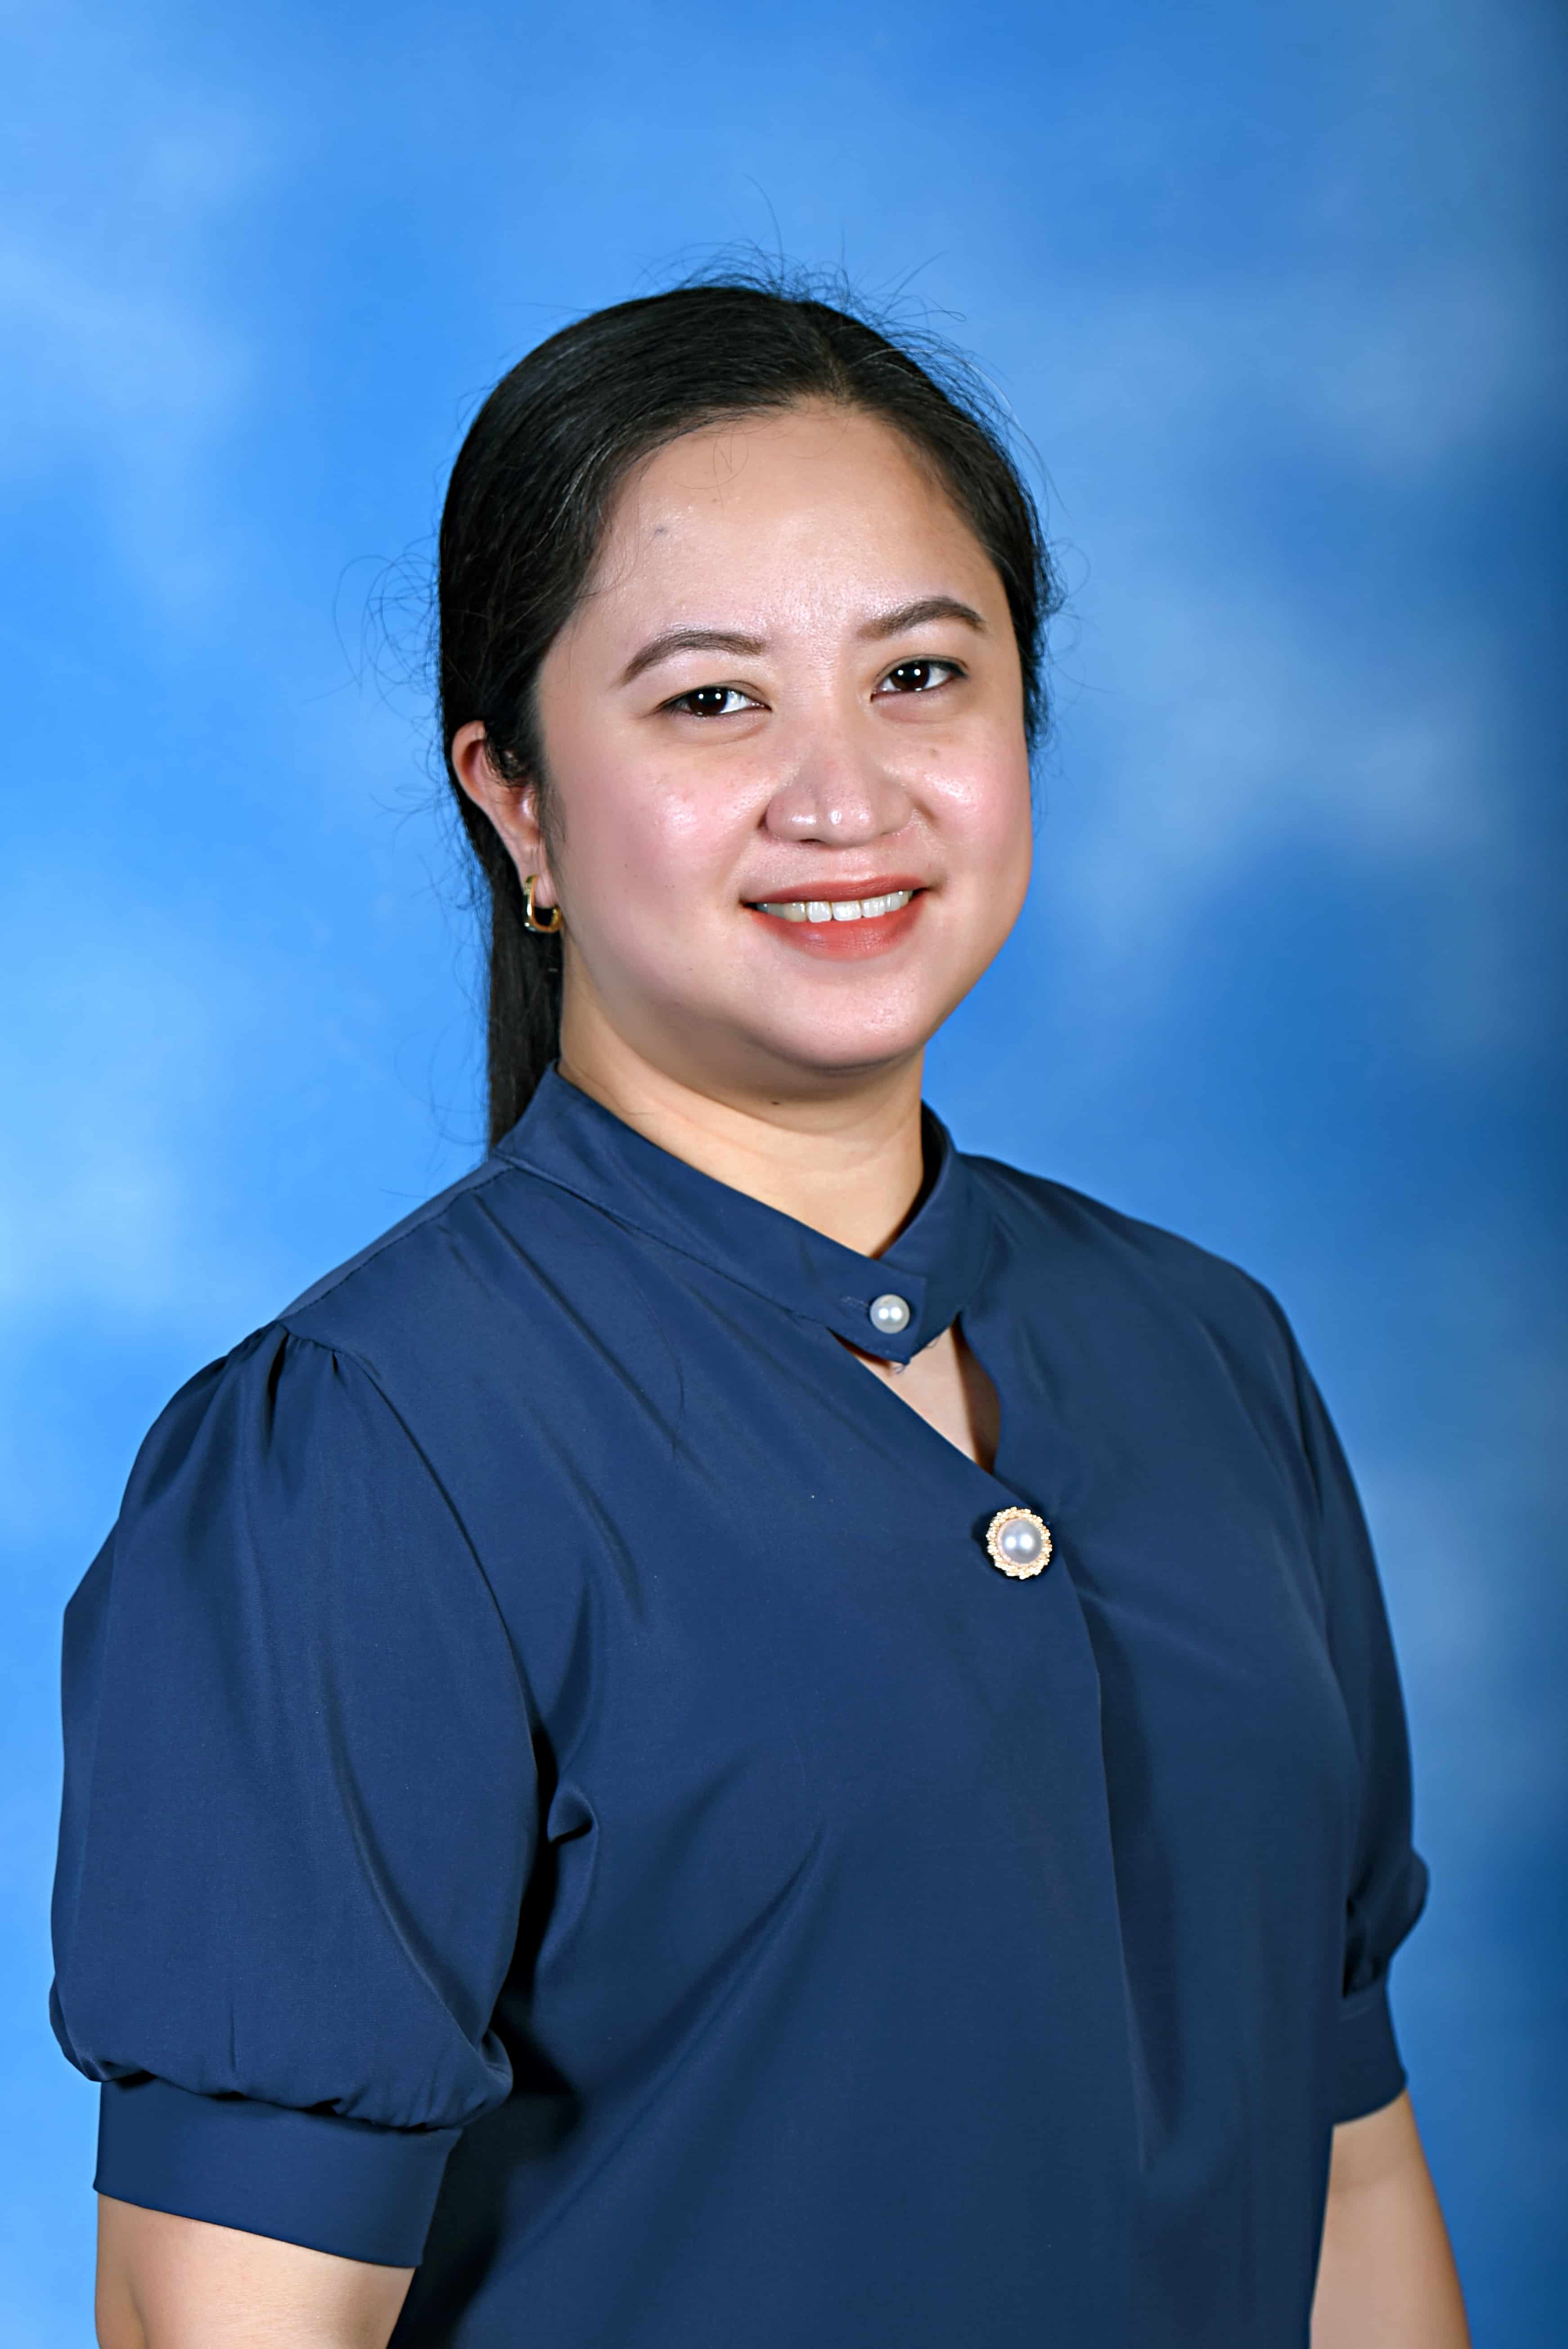 Mrs. Arlene Villanueva